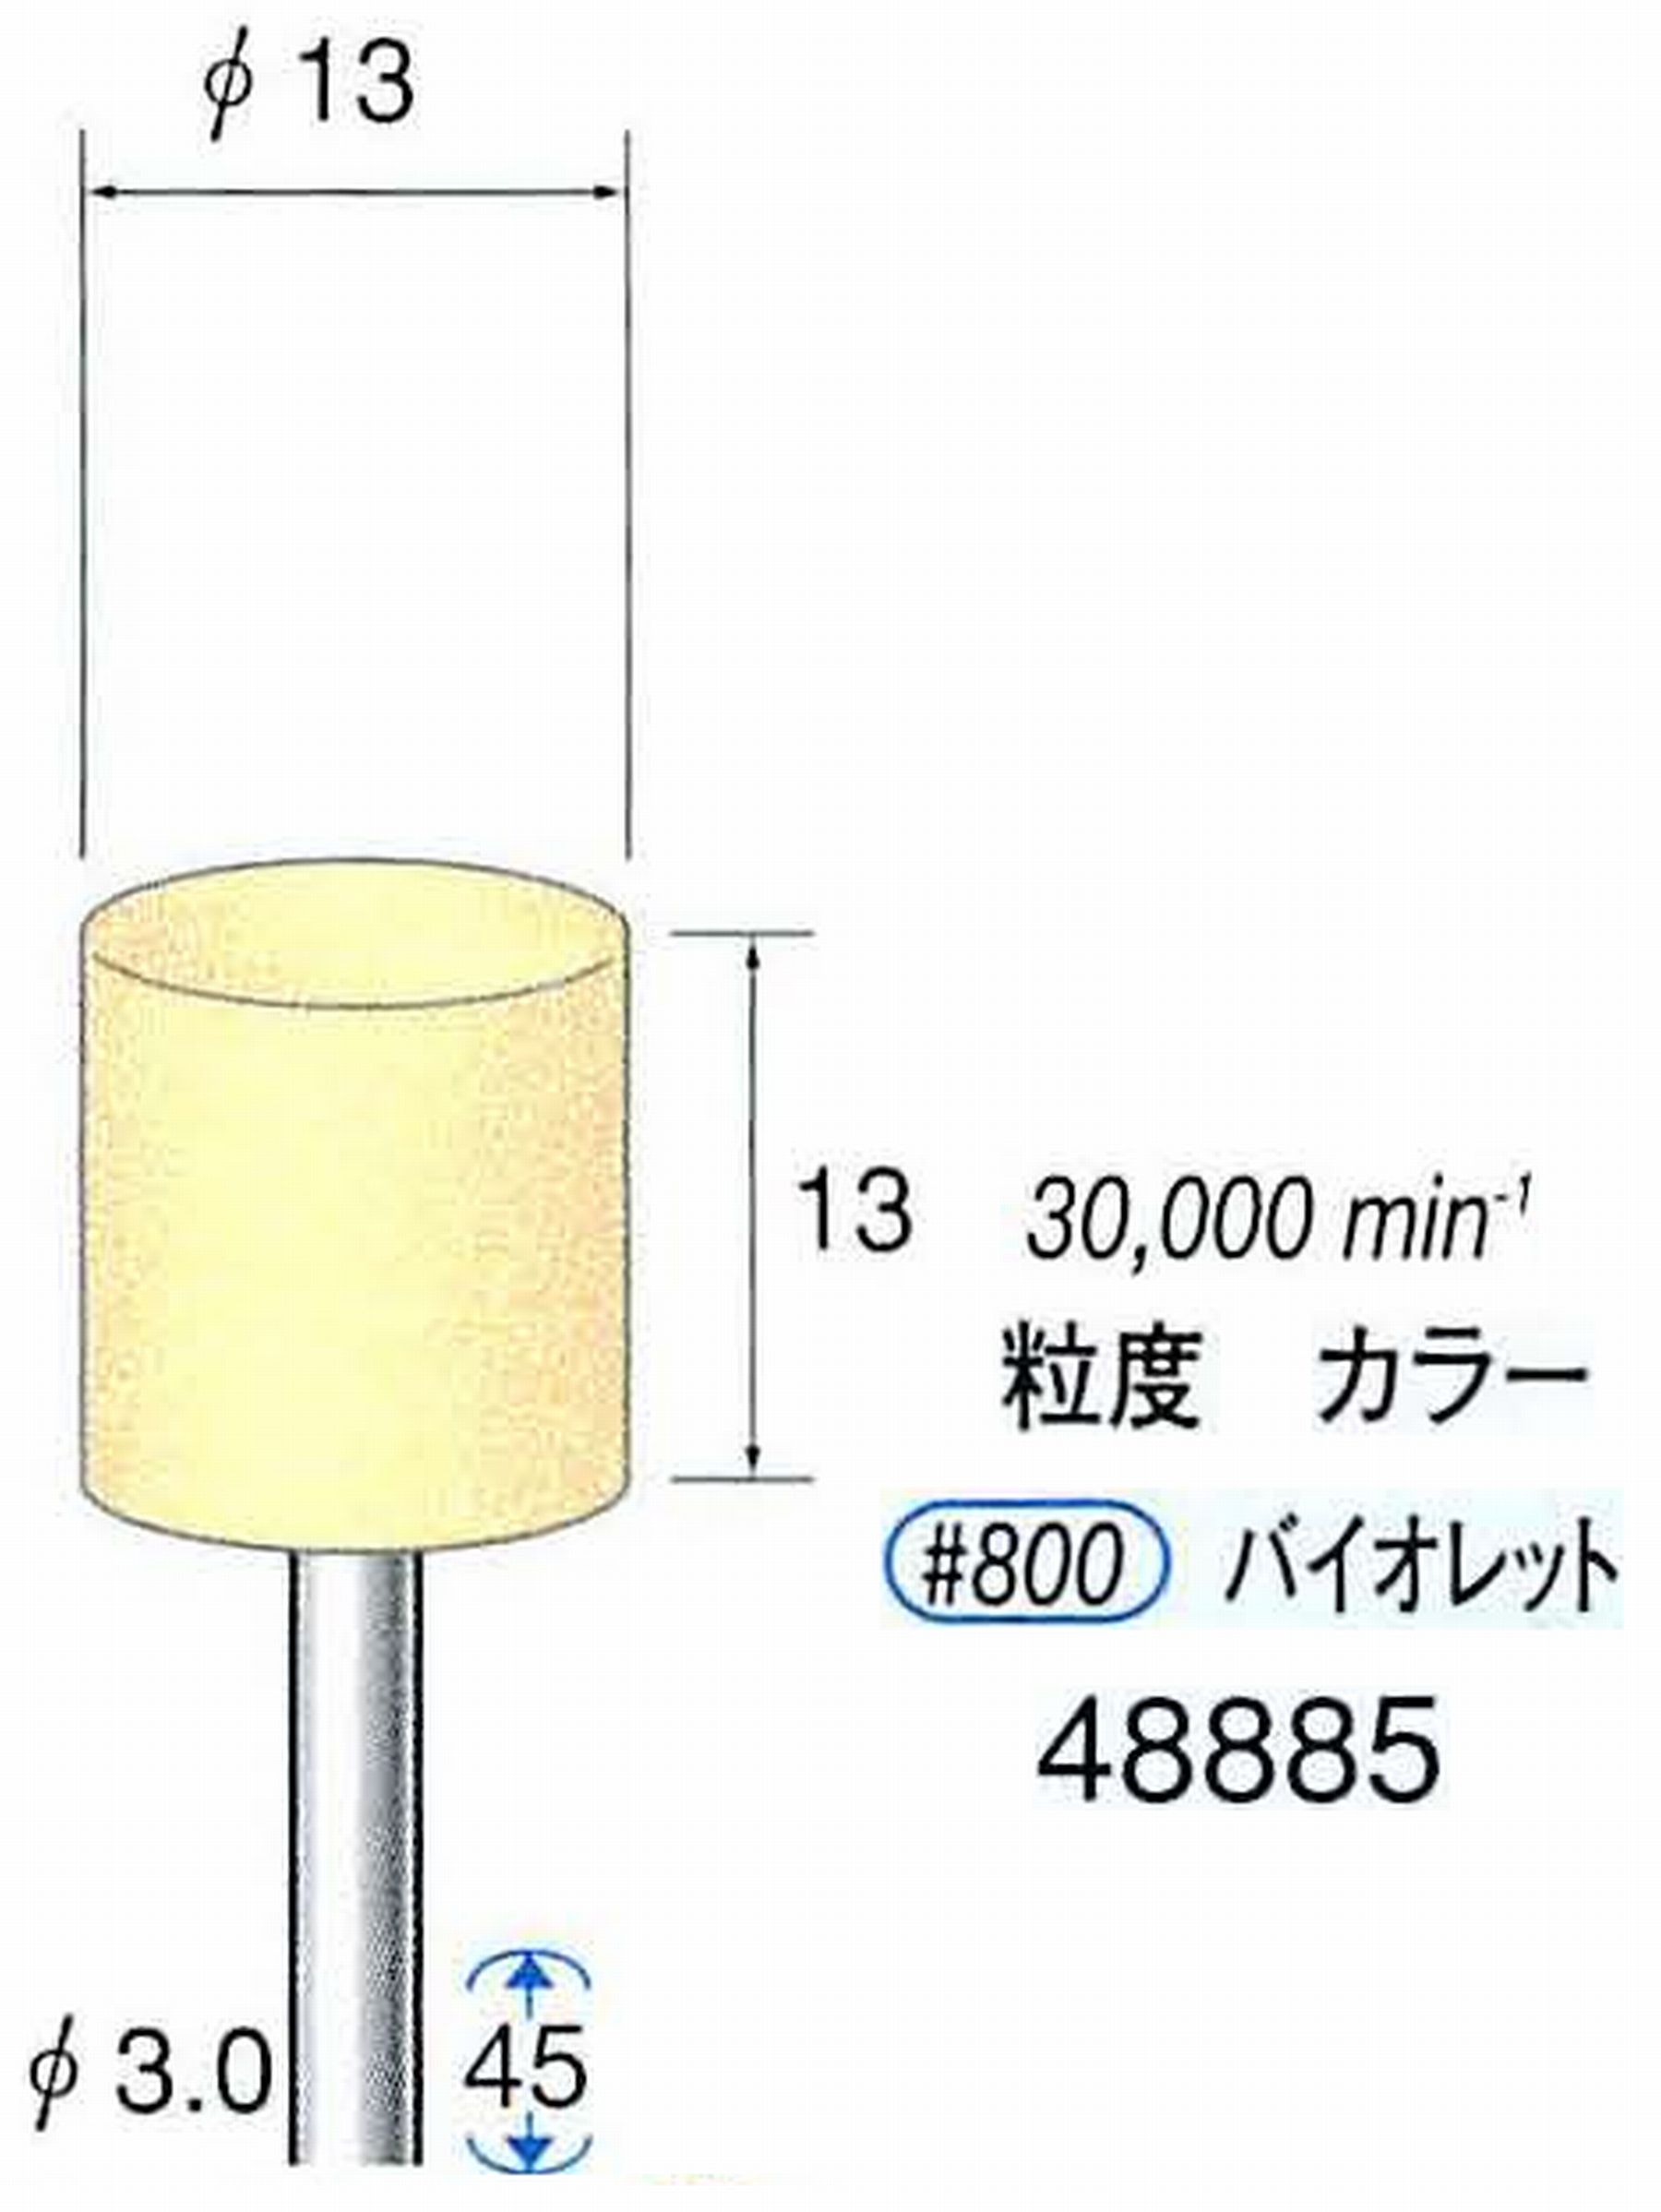 ナカニシ/NAKANISHI ポリッシュサンダー 軸径(シャンク)φ3.0mm 48885